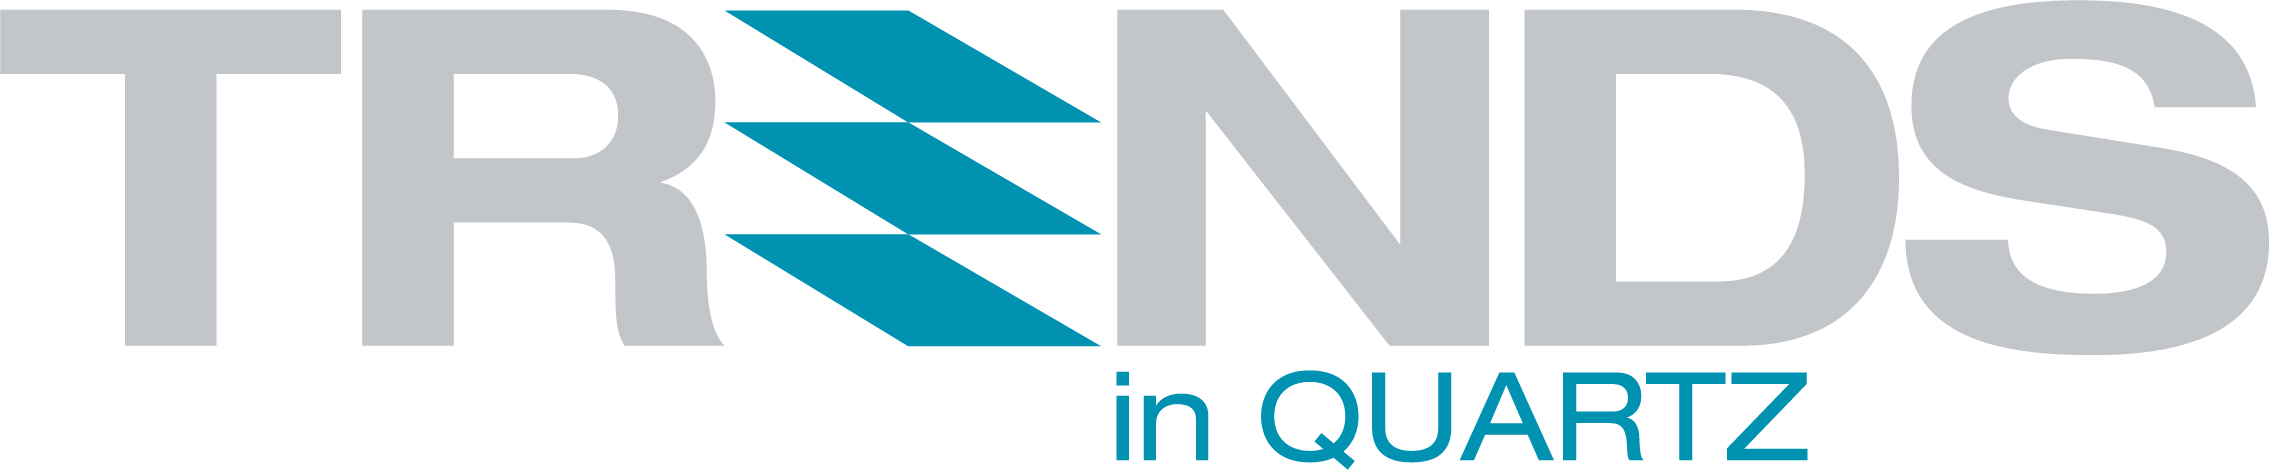 Trends in Quartz Logo